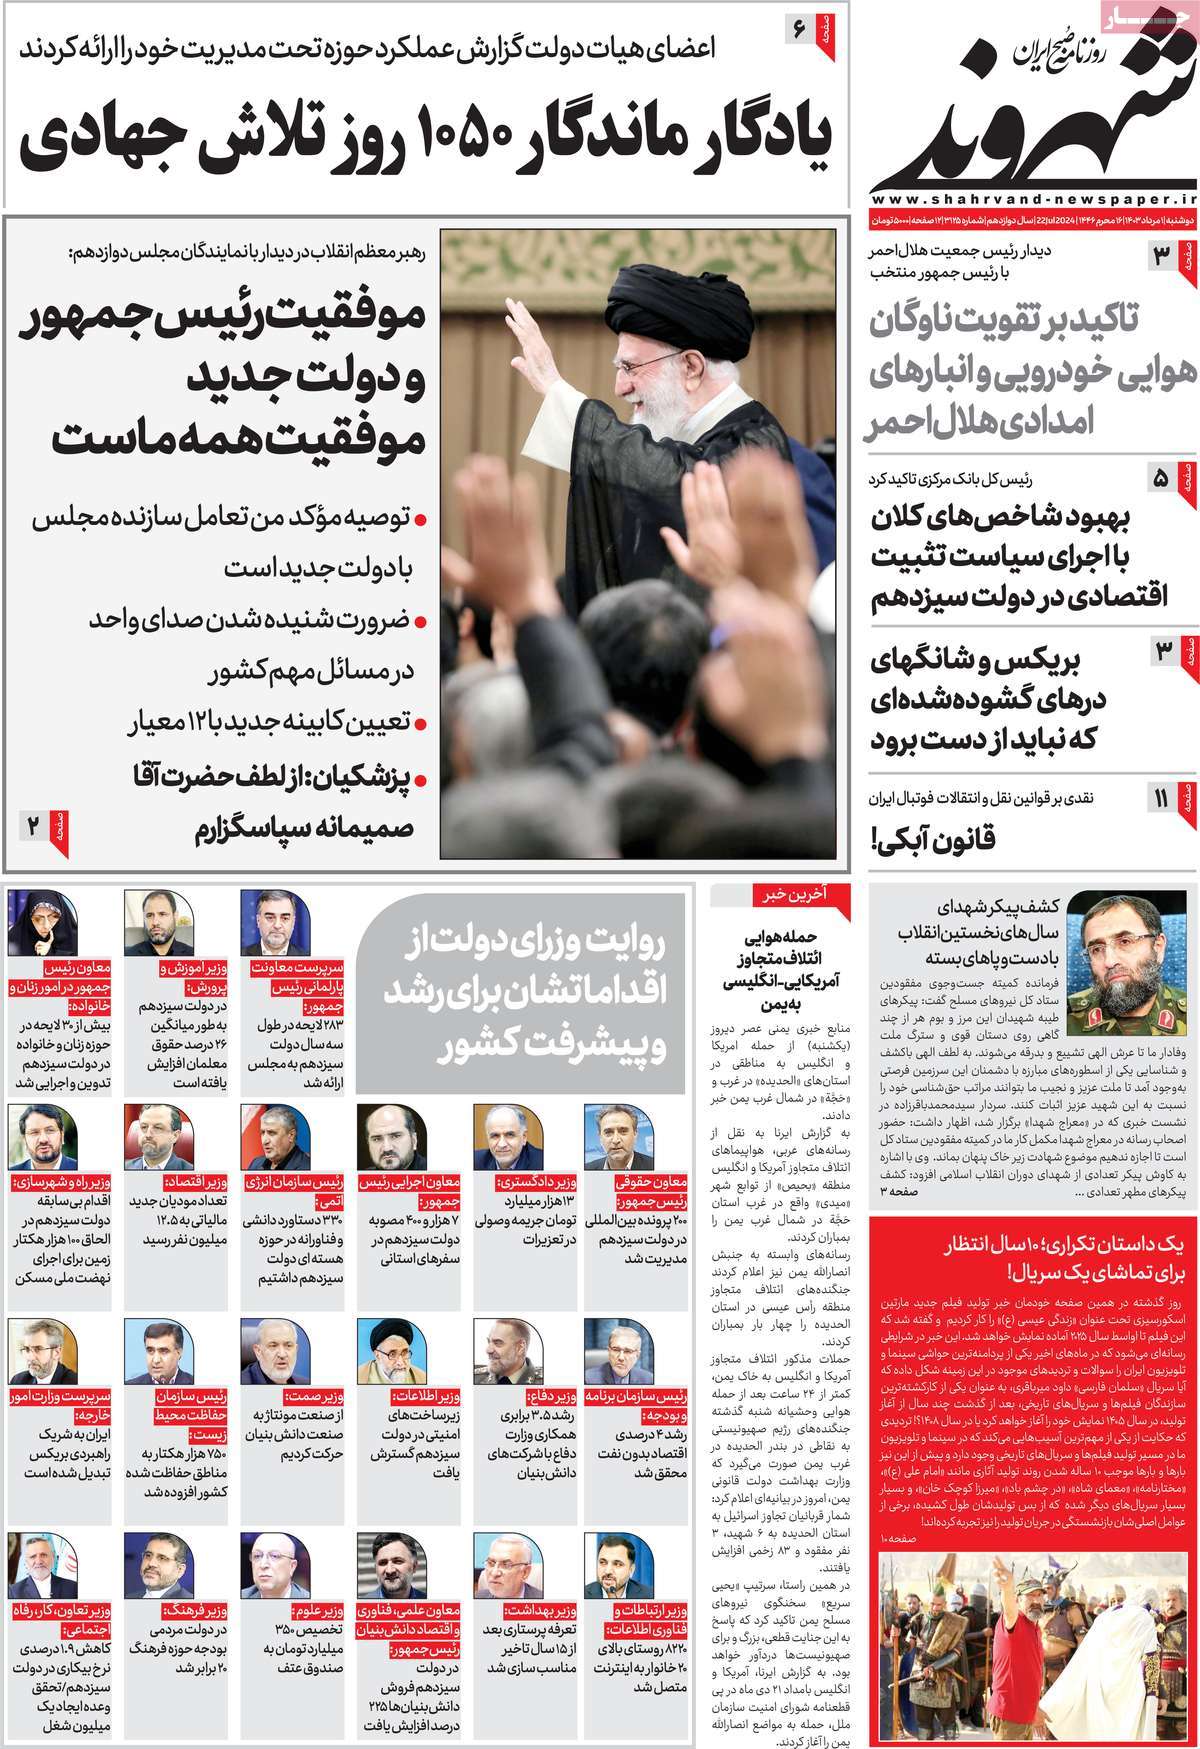 صفحه اول روزنامه شهروند